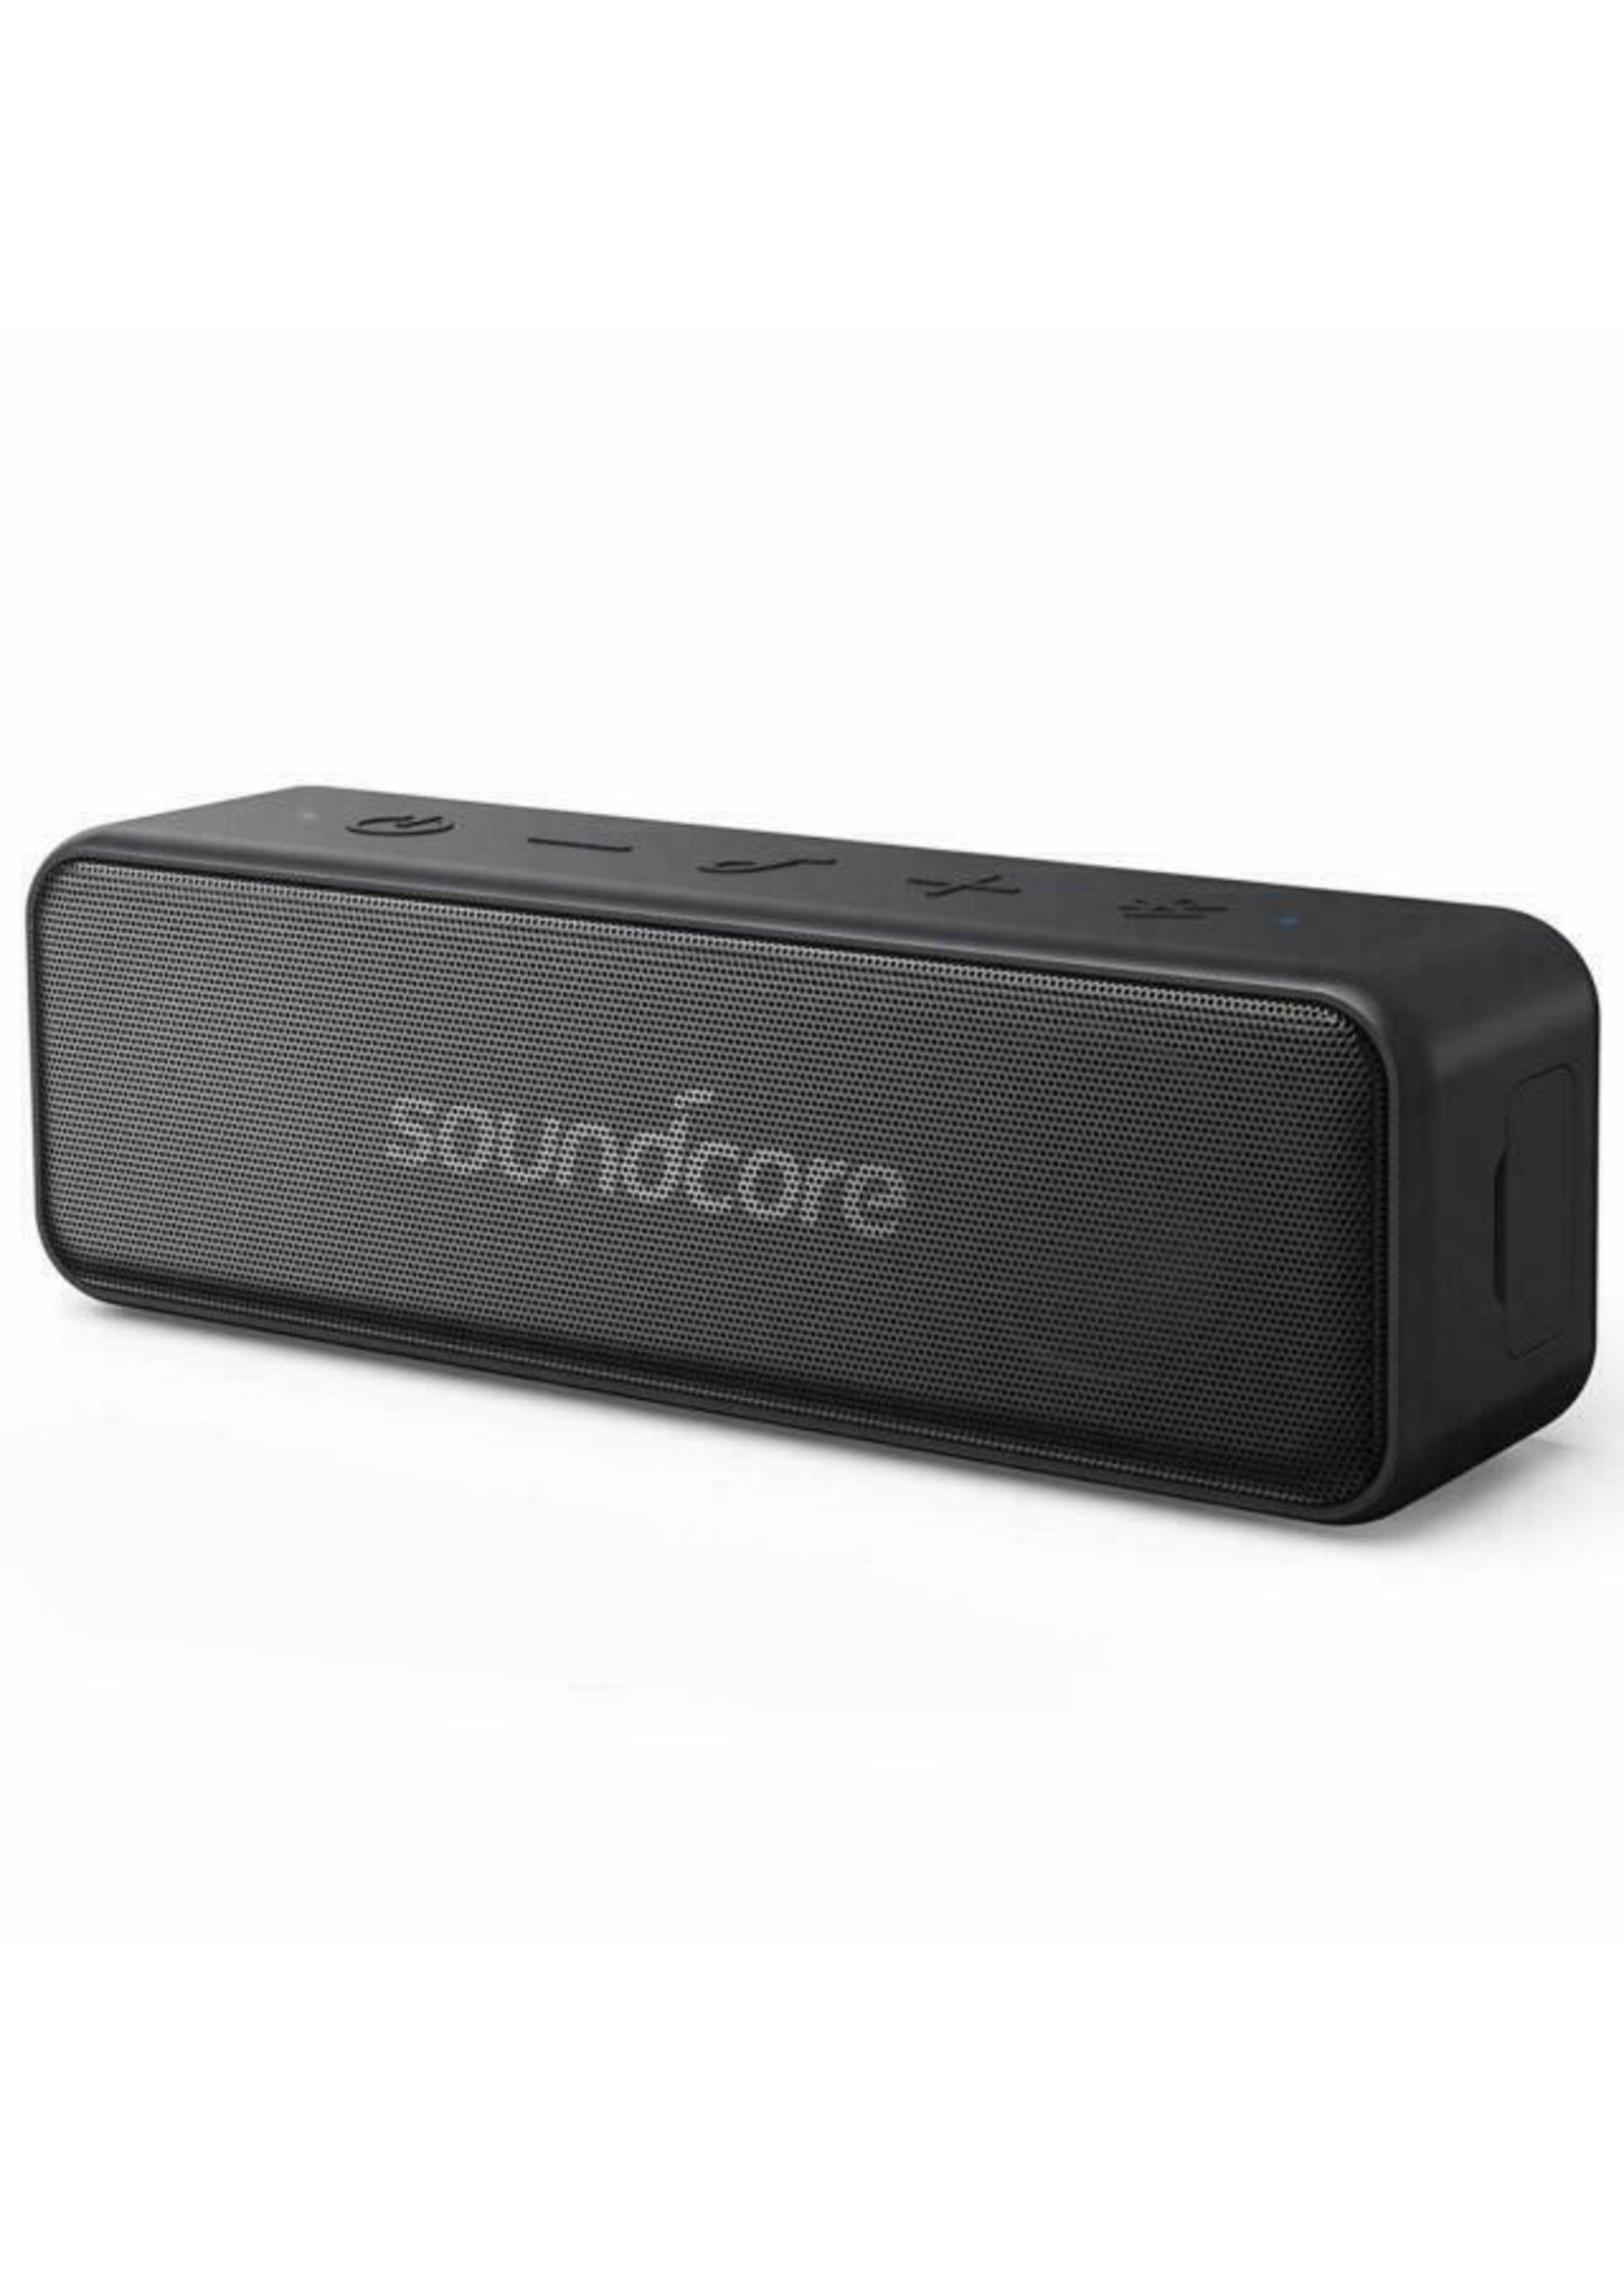 Anker Soundcore Motion B portable speaker (CLEARANCE)